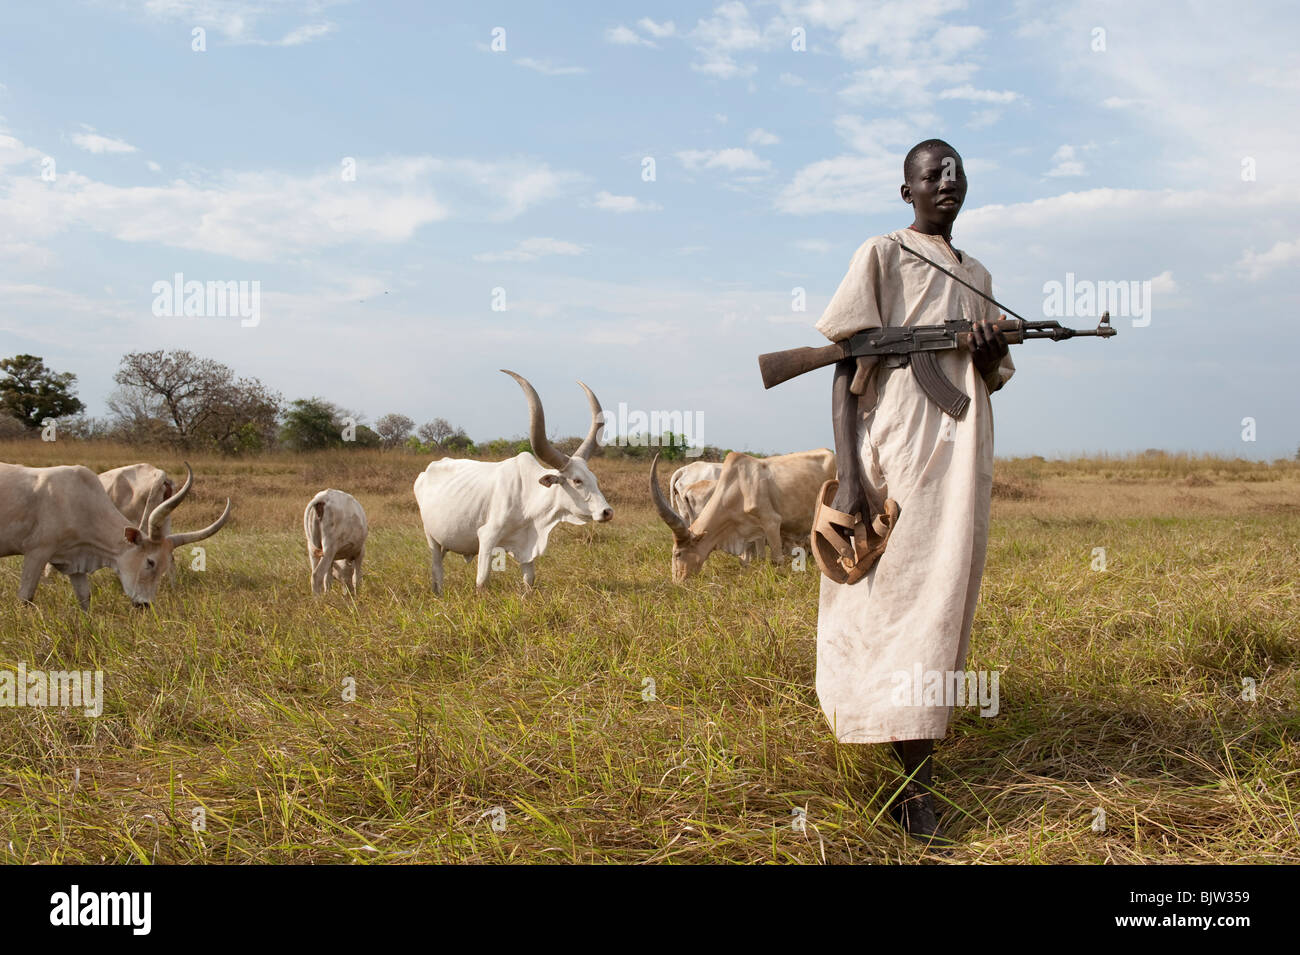 Au sud-Soudan, Cuibet près de Rumbek , tribu Dinka, Shepherd armés de Kalachnikov AK-47 protéger leurs vaches zébu bovins hostile de raider Banque D'Images